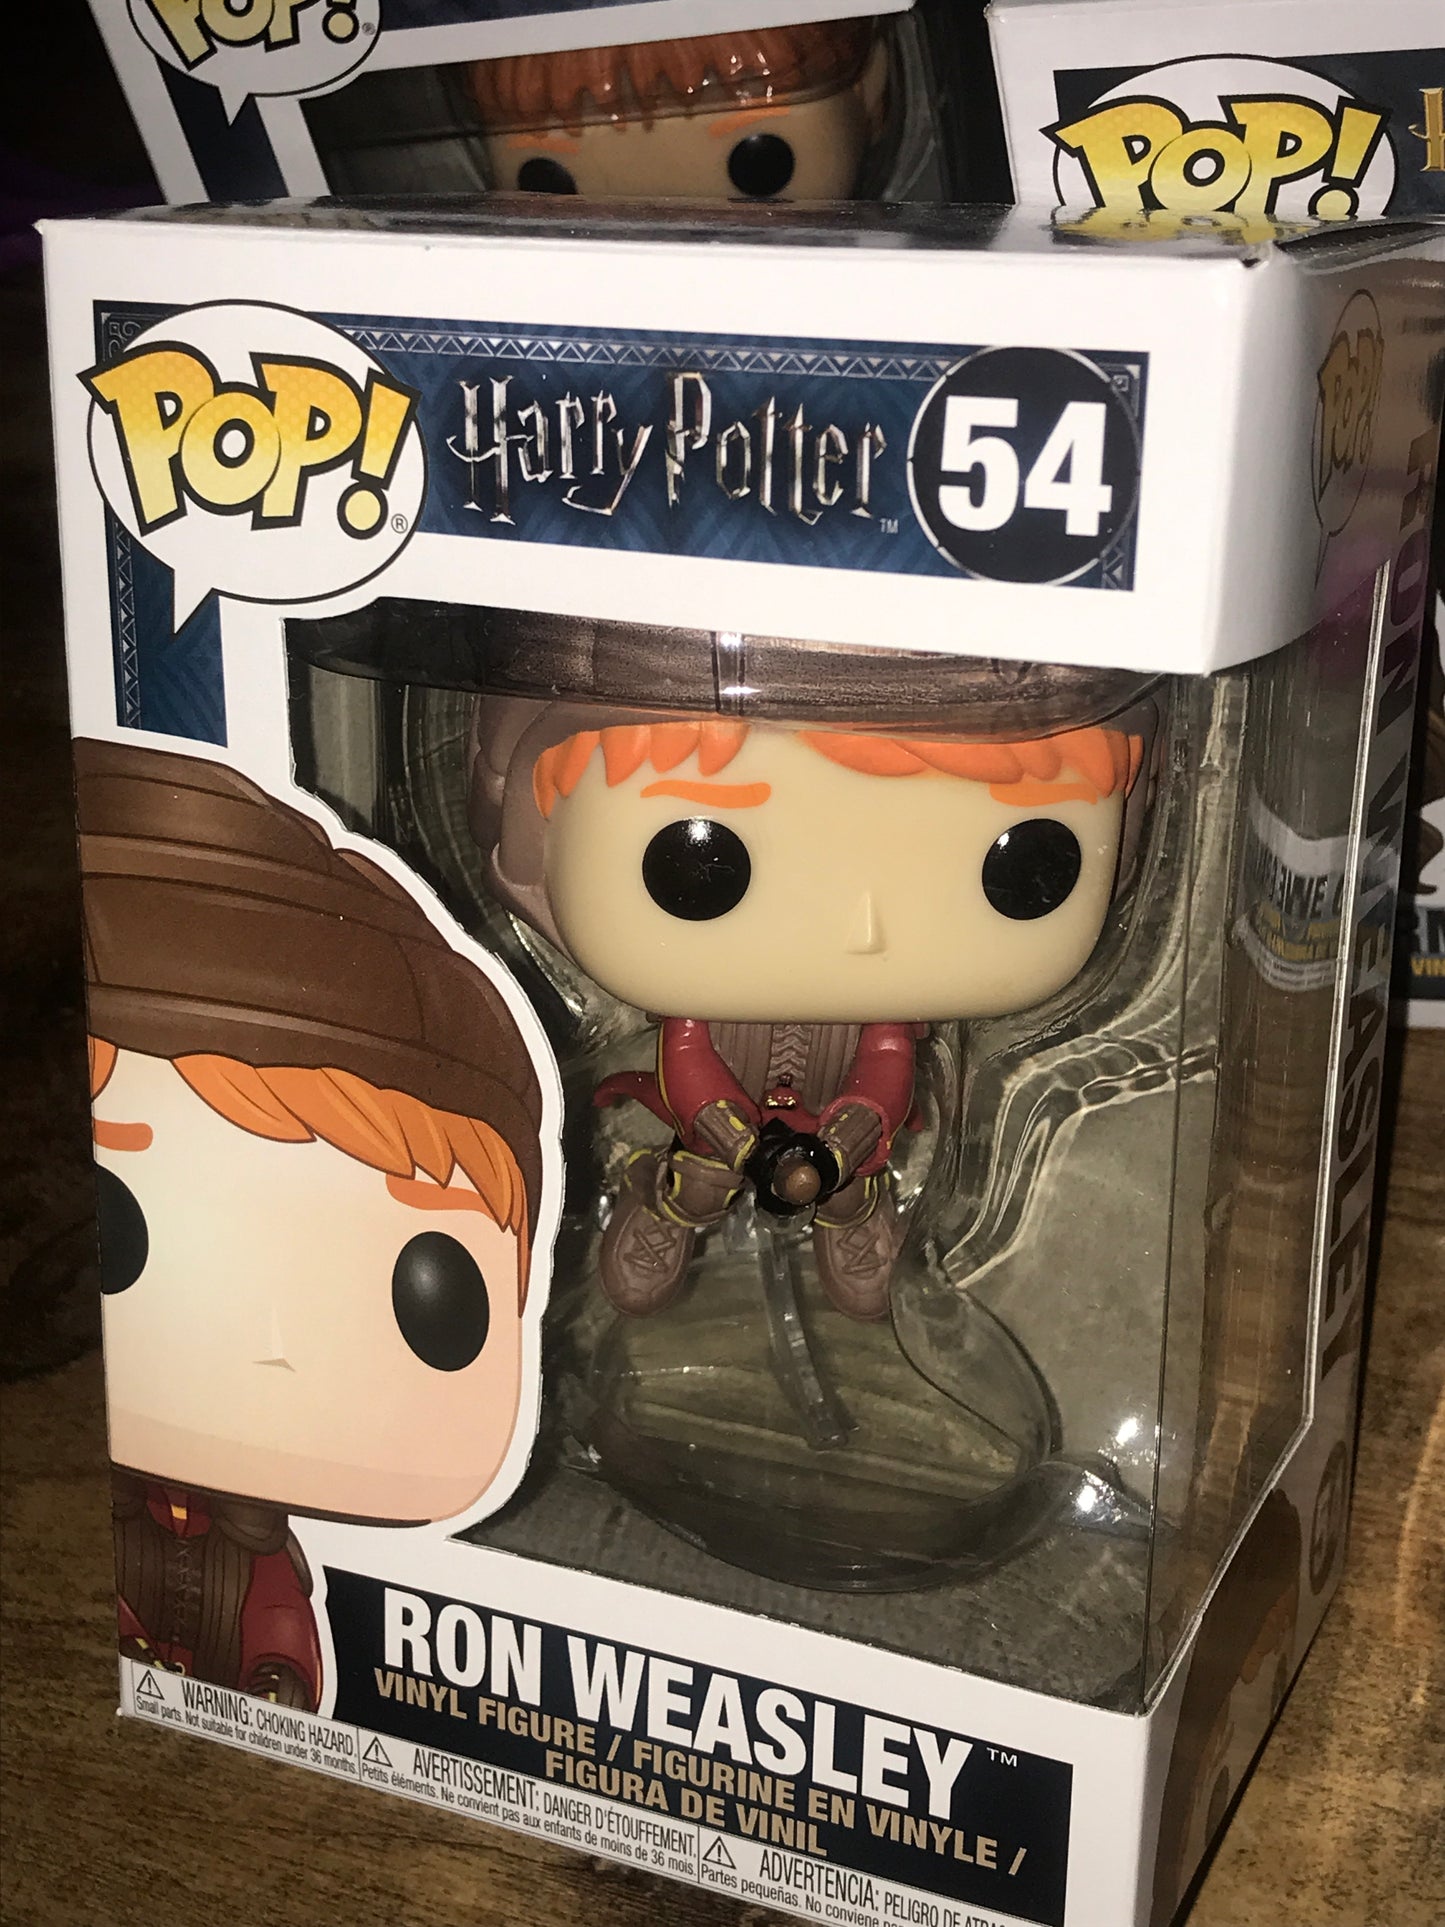 Harry Potter Ron Weasley 54 broom Funko Pop! Vinyl figure